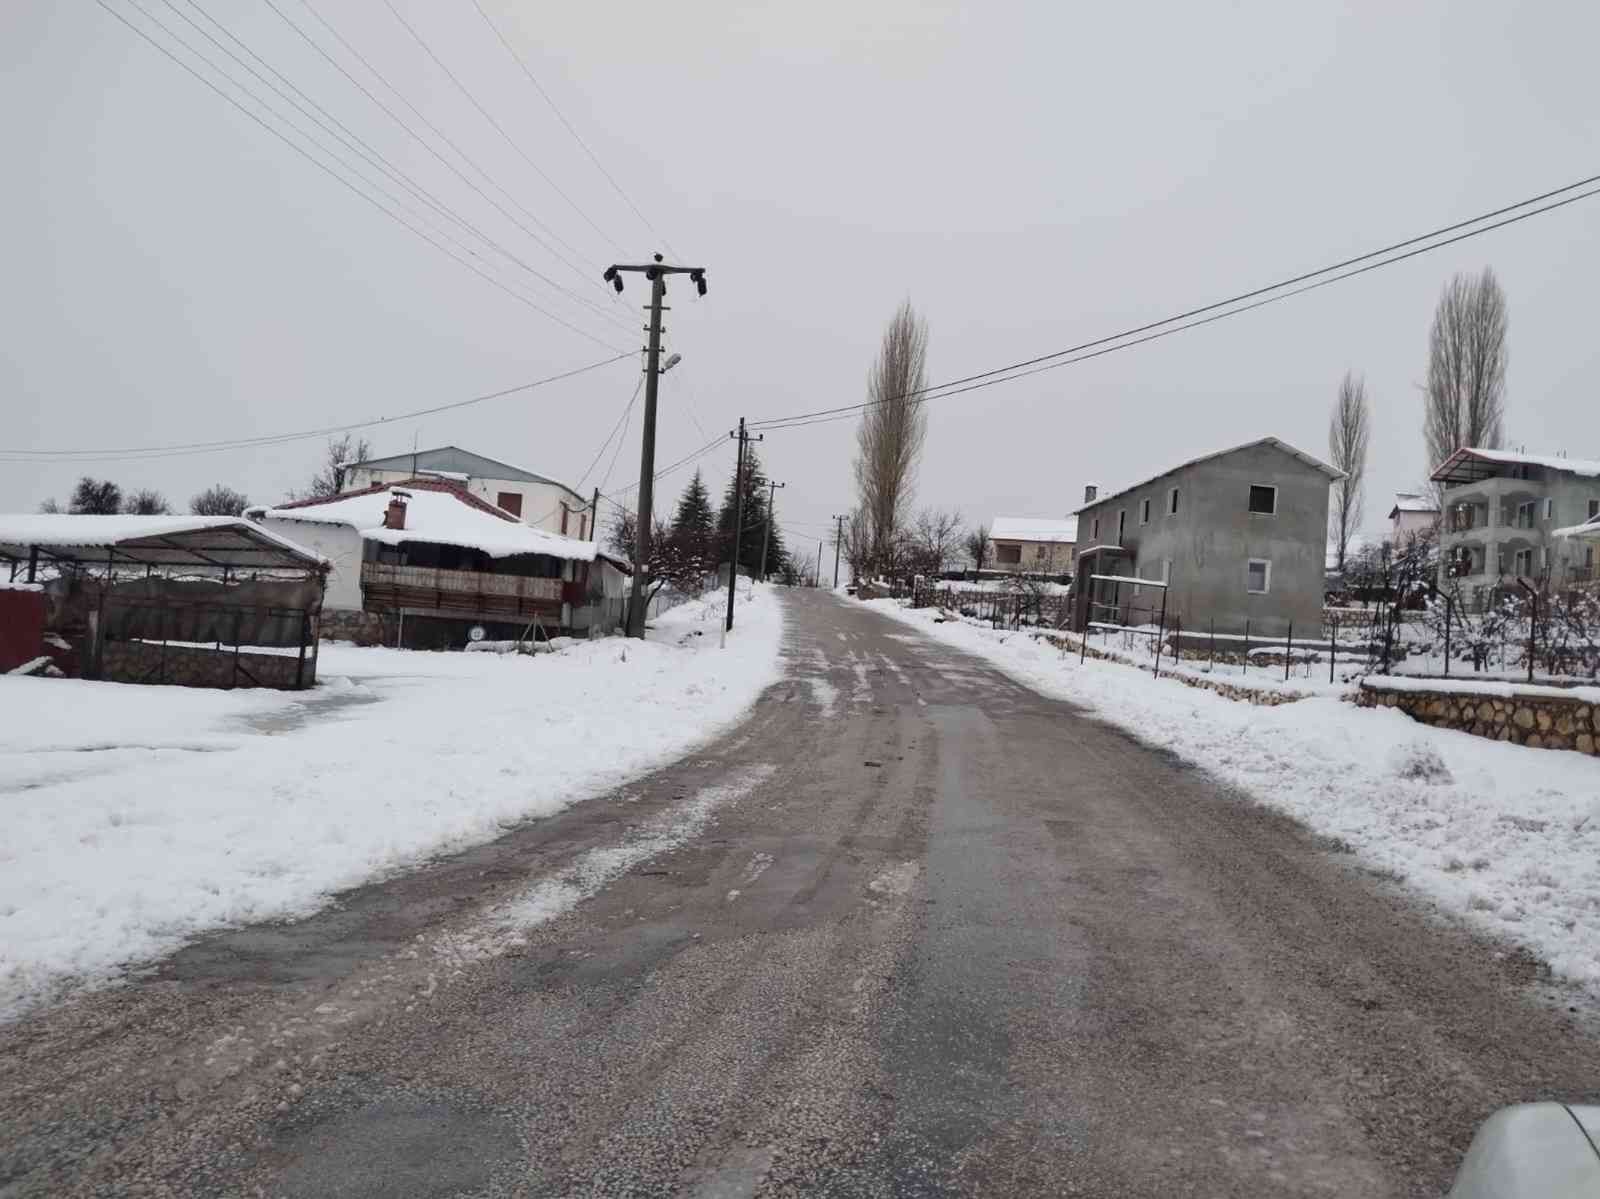 Seydikemer’de karla kaplanan yollar açıldı